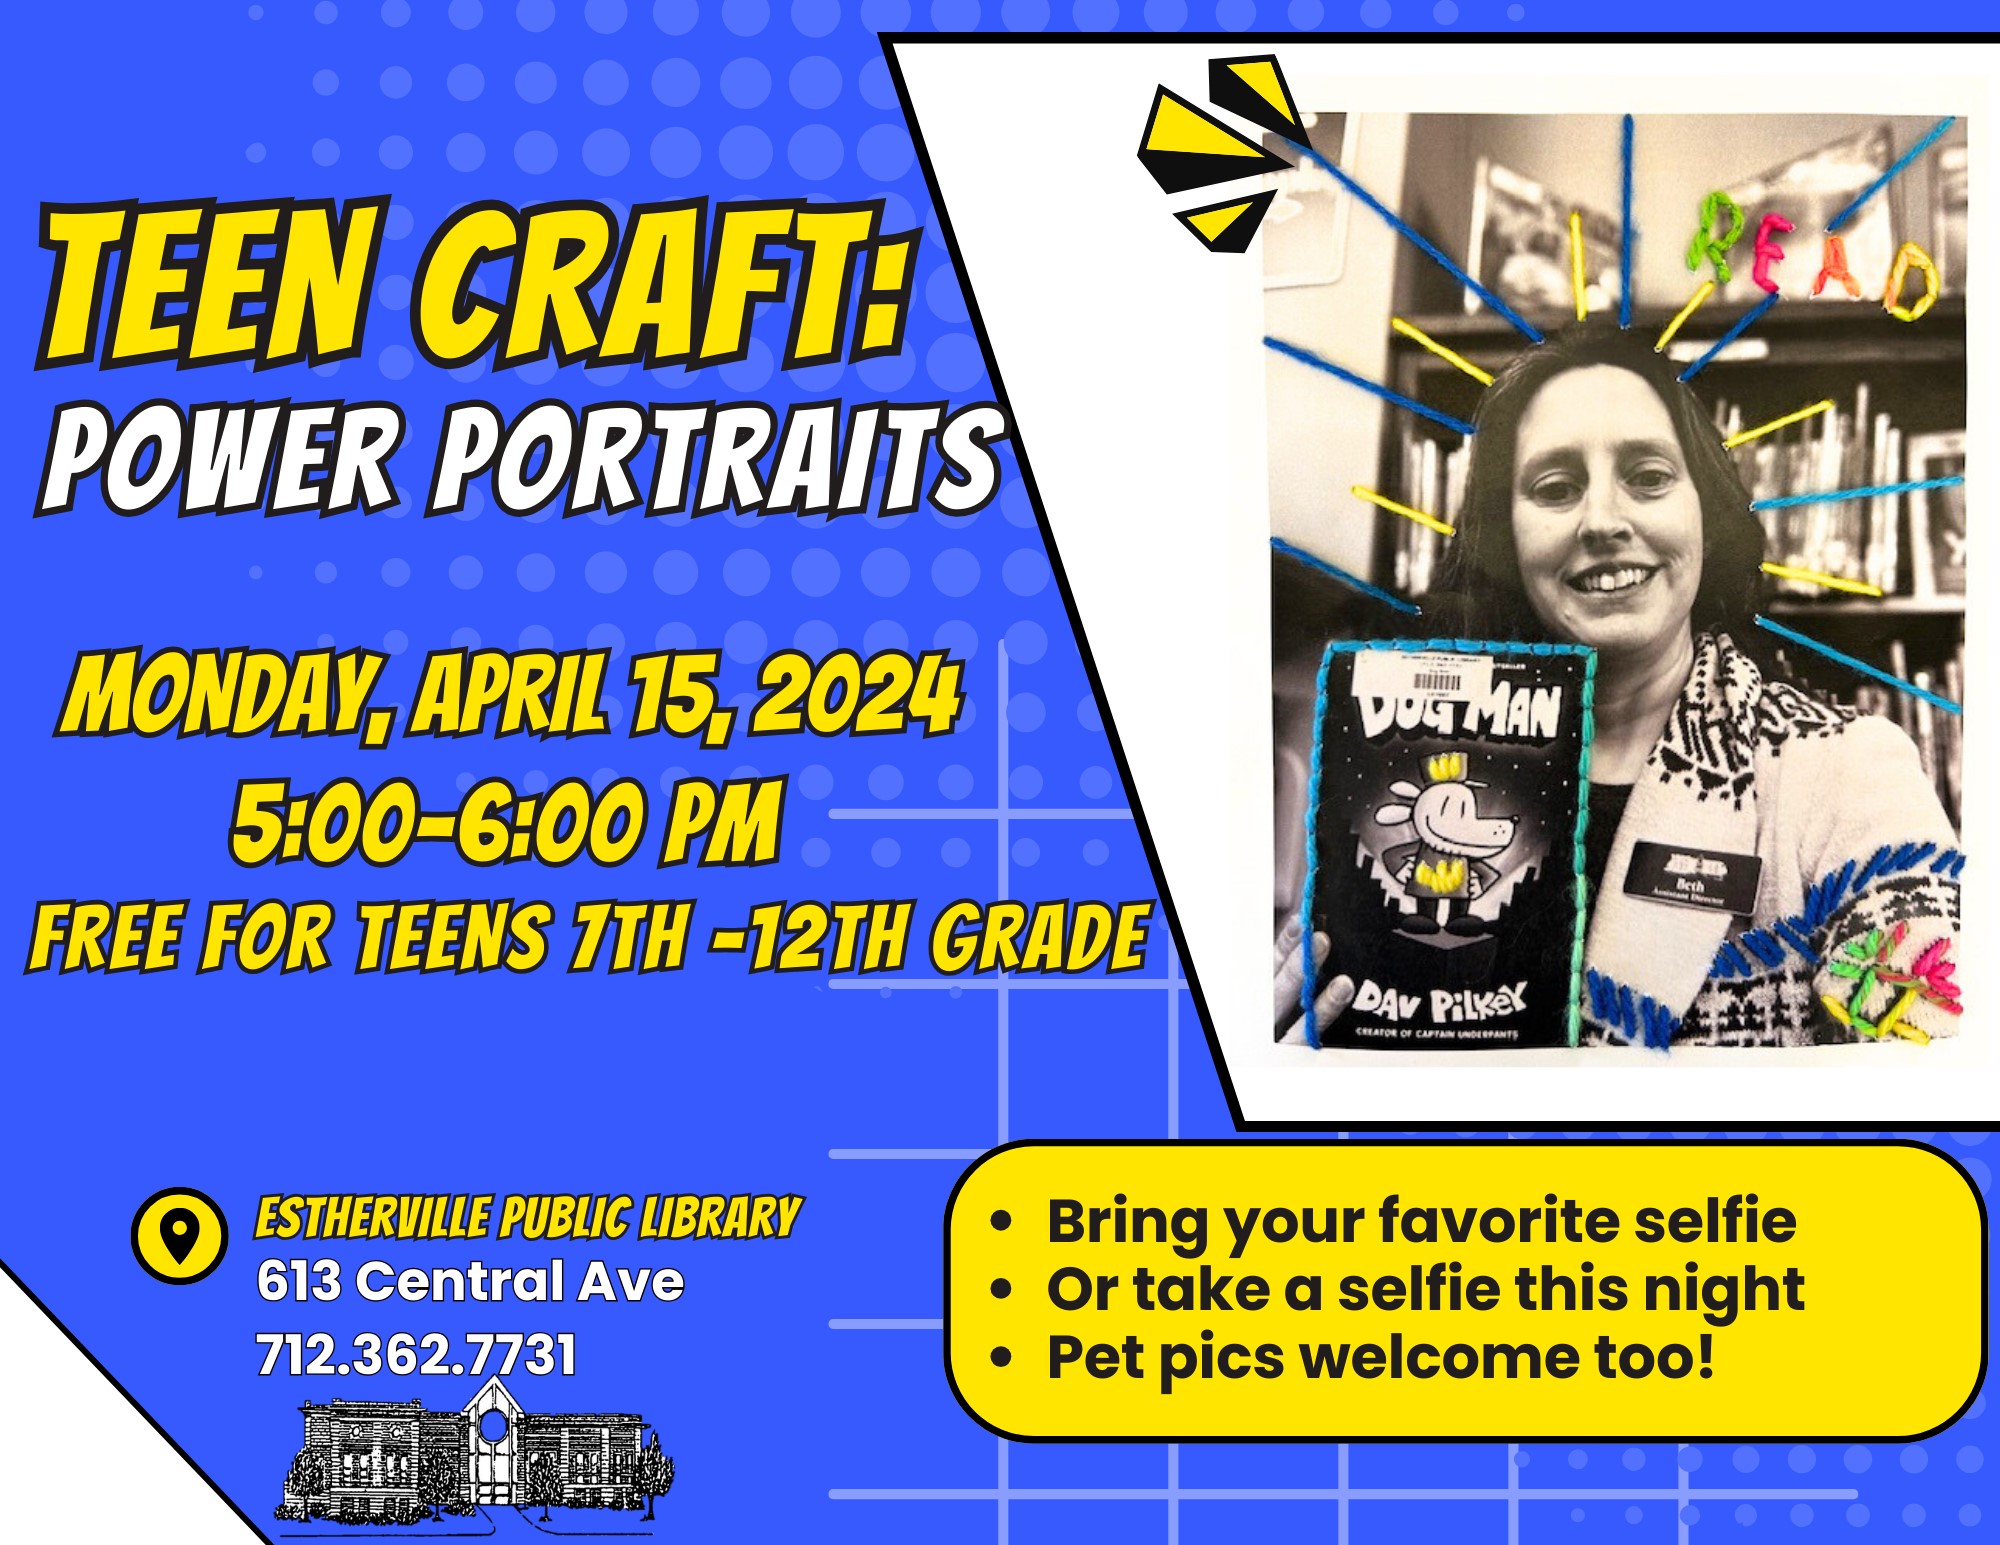 Teen Craft.Power Portraits.jpeg